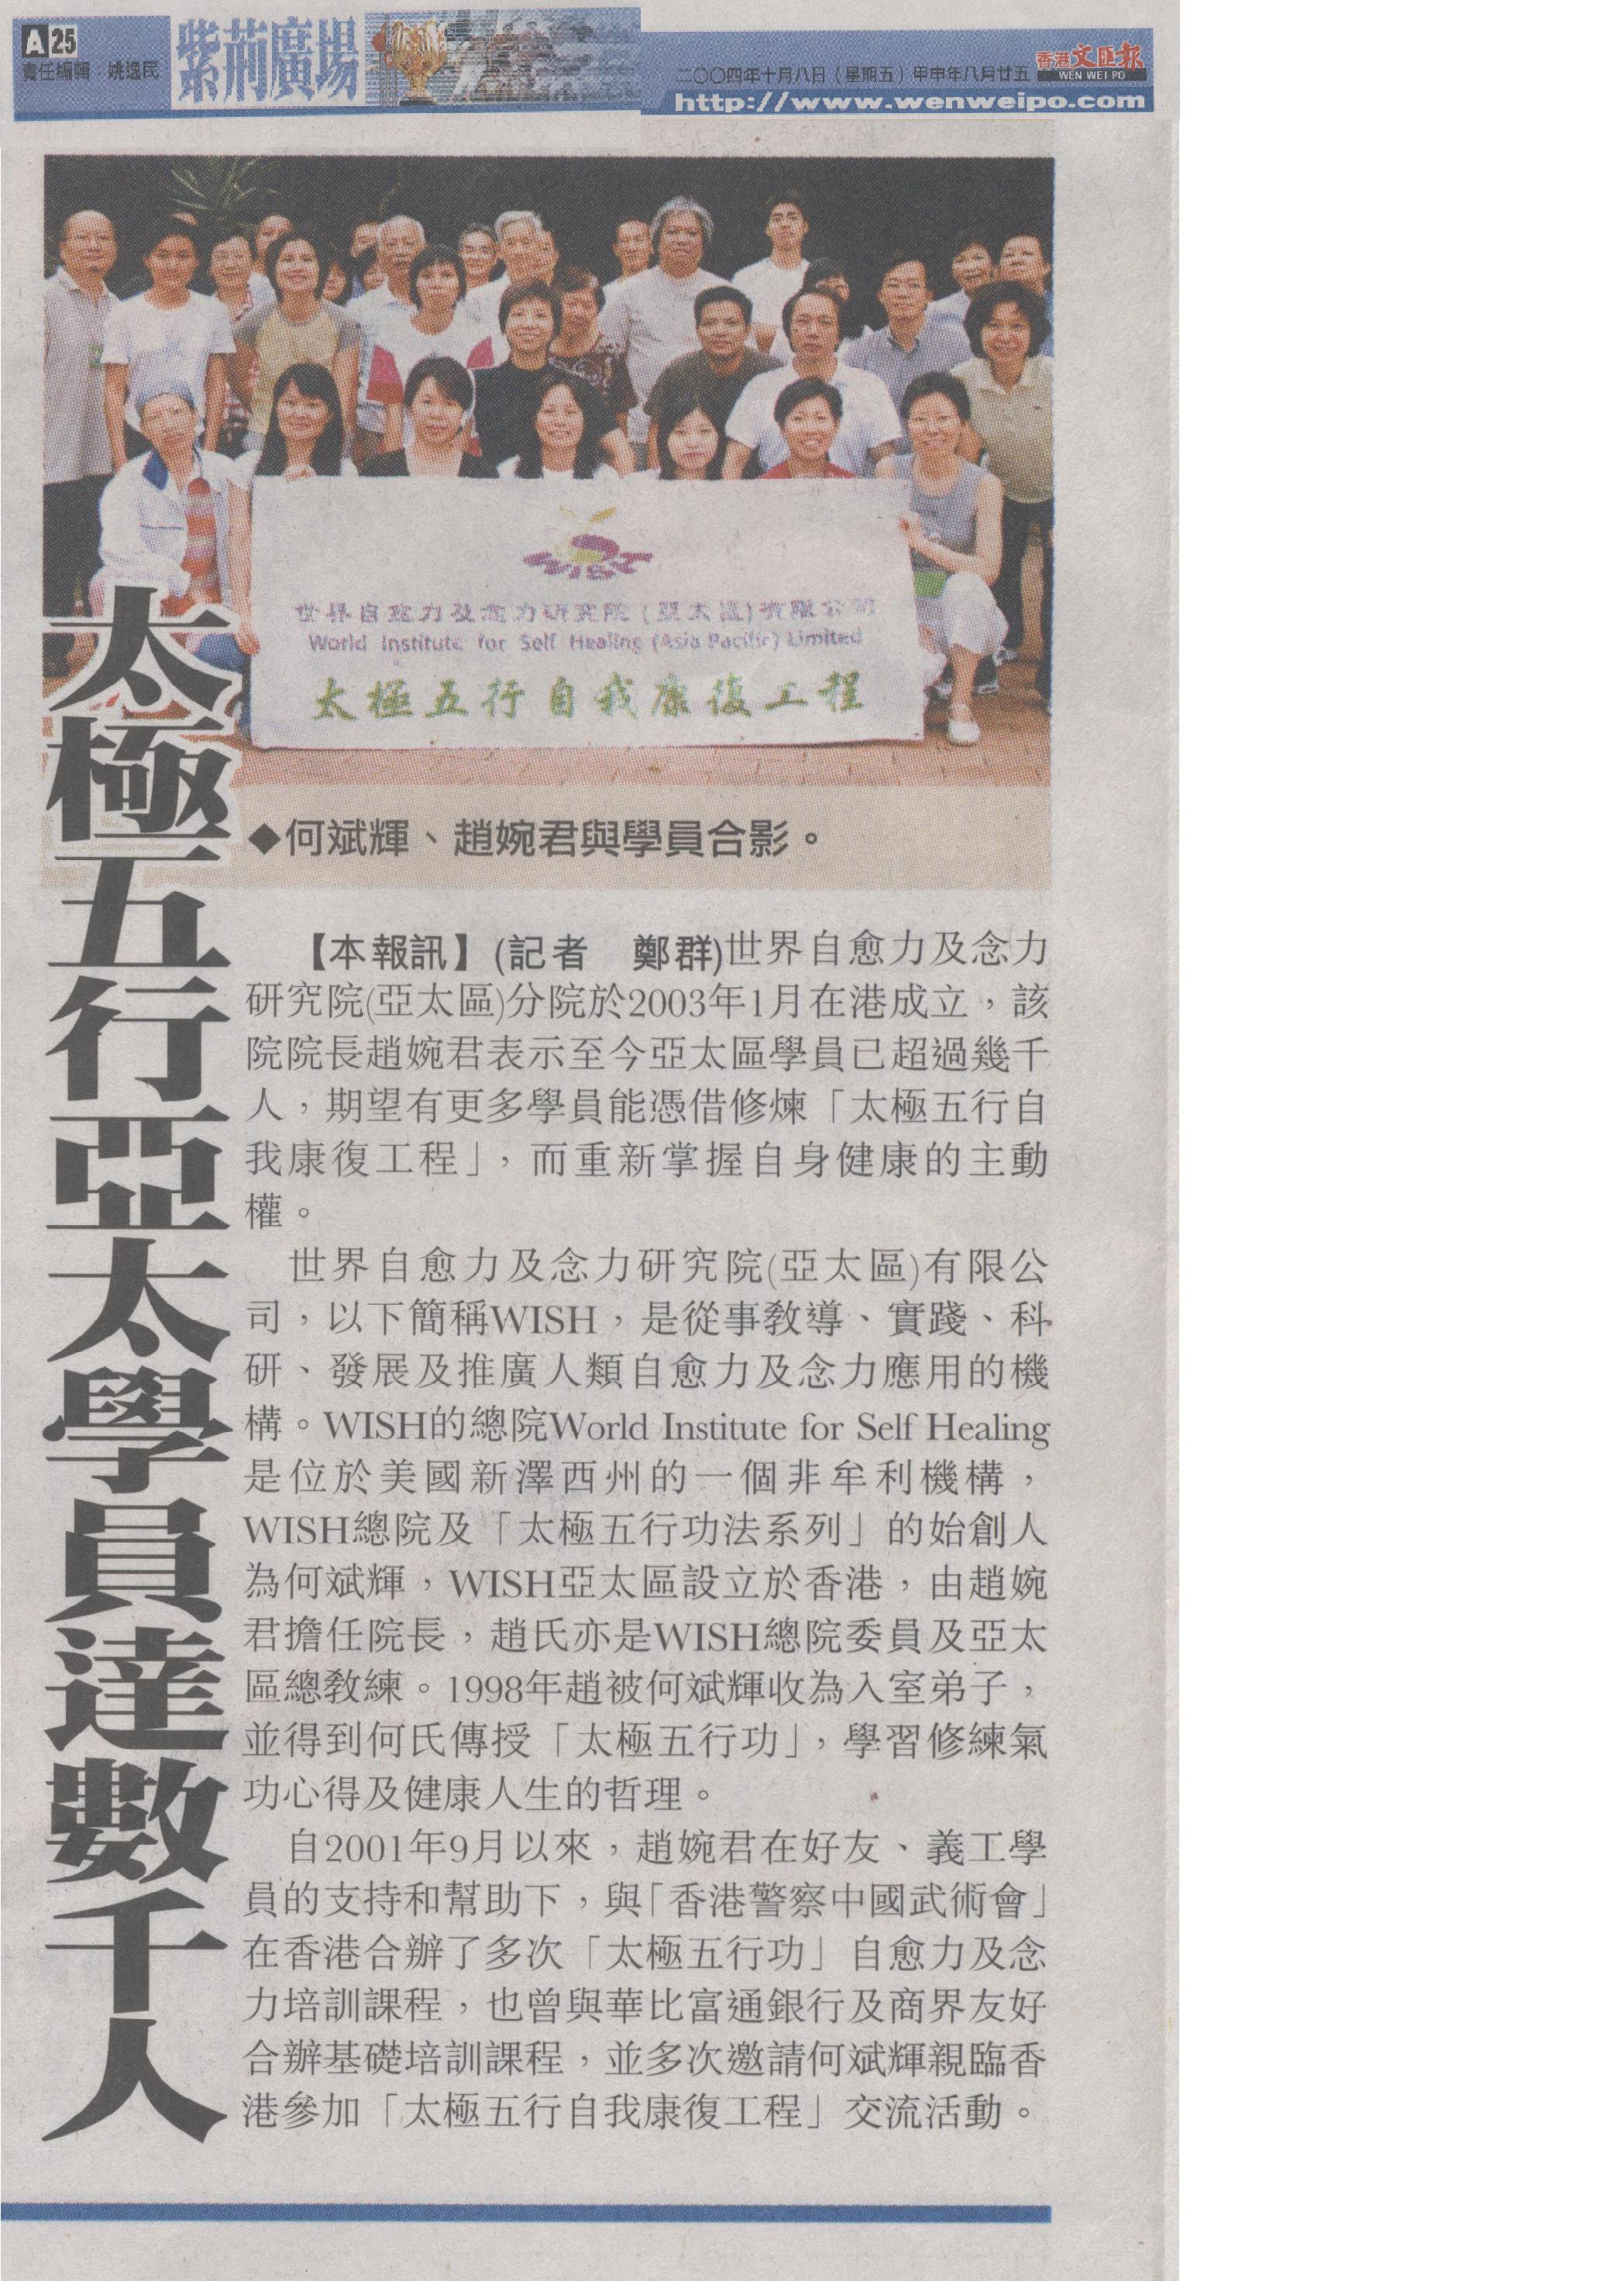 香港文 匯報: 2004年10月8日 (太極五行亞太學員達數千人)